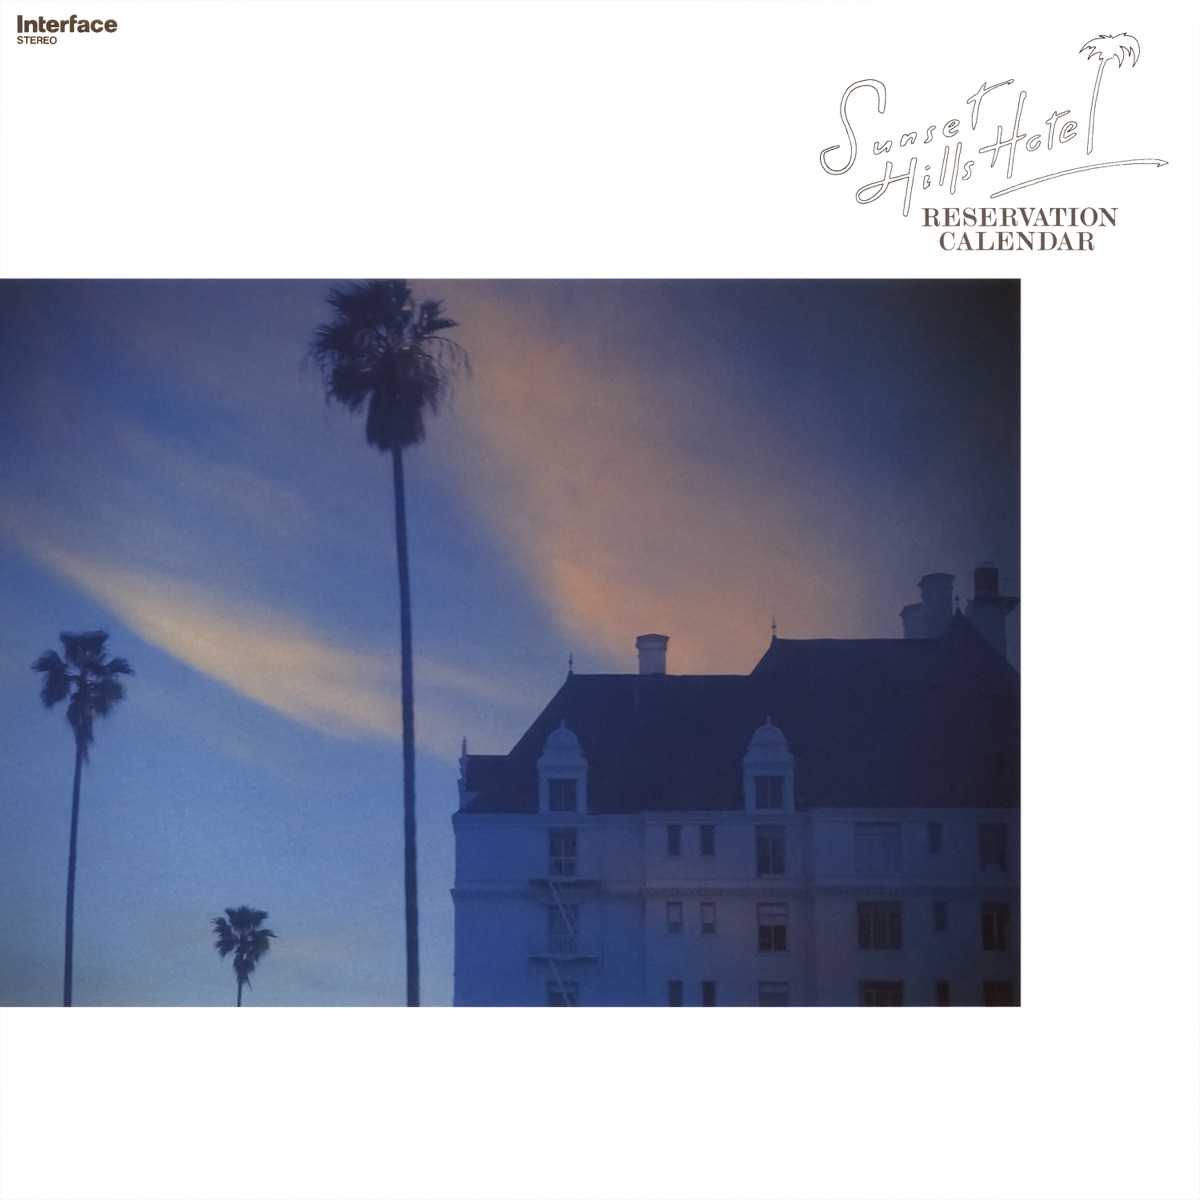 Sunset Hills Hotel - Album by Shigeru Suzuki - Apple Music